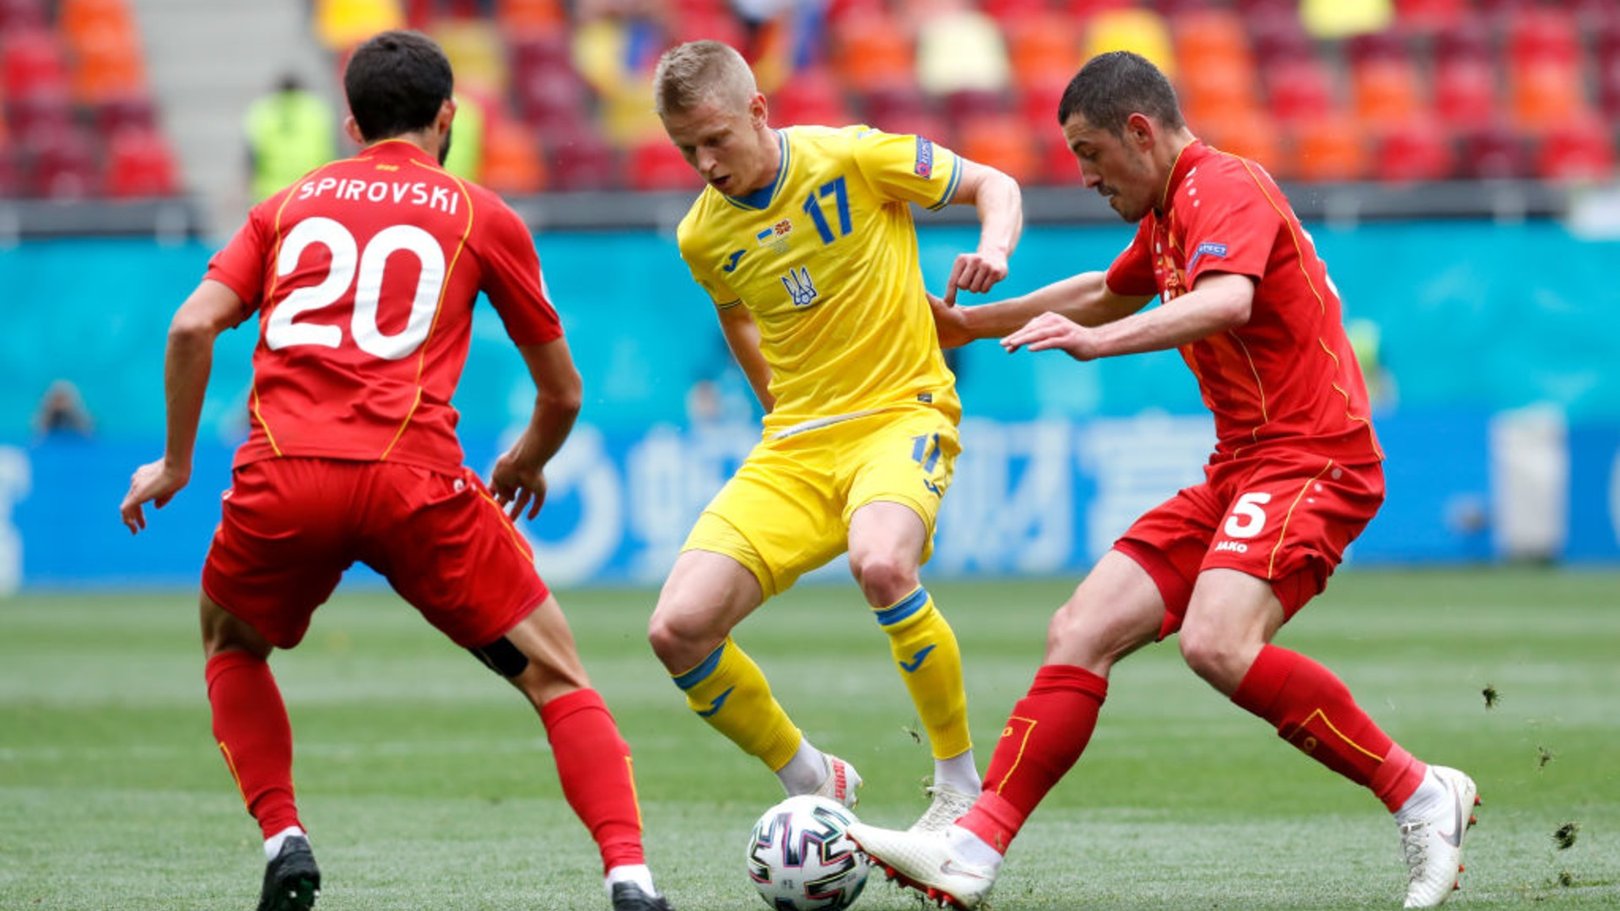 Zinchenko helps Ukraine to first Euro 2020 win